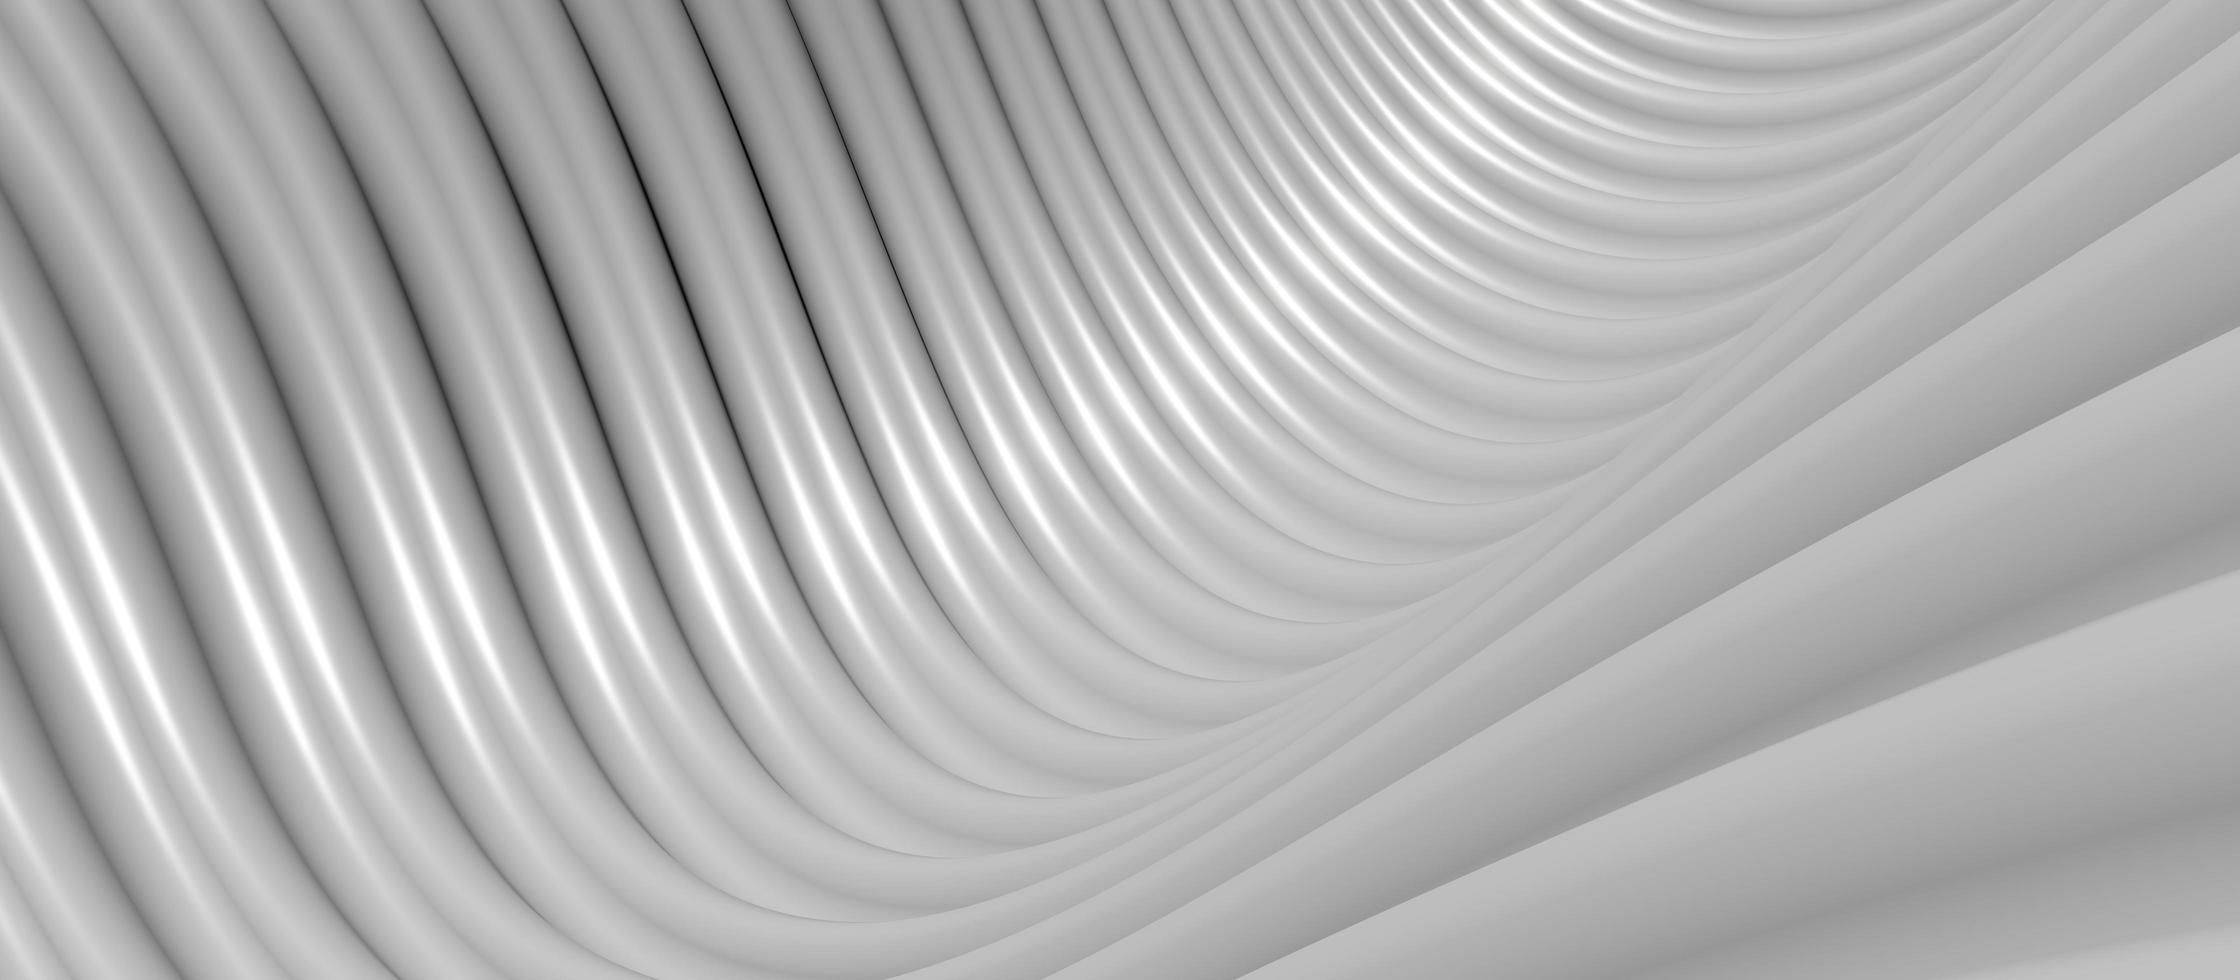 vit plast våg parallella linjer bakgrundsvåg av en böjd kurva 3d illustration foto